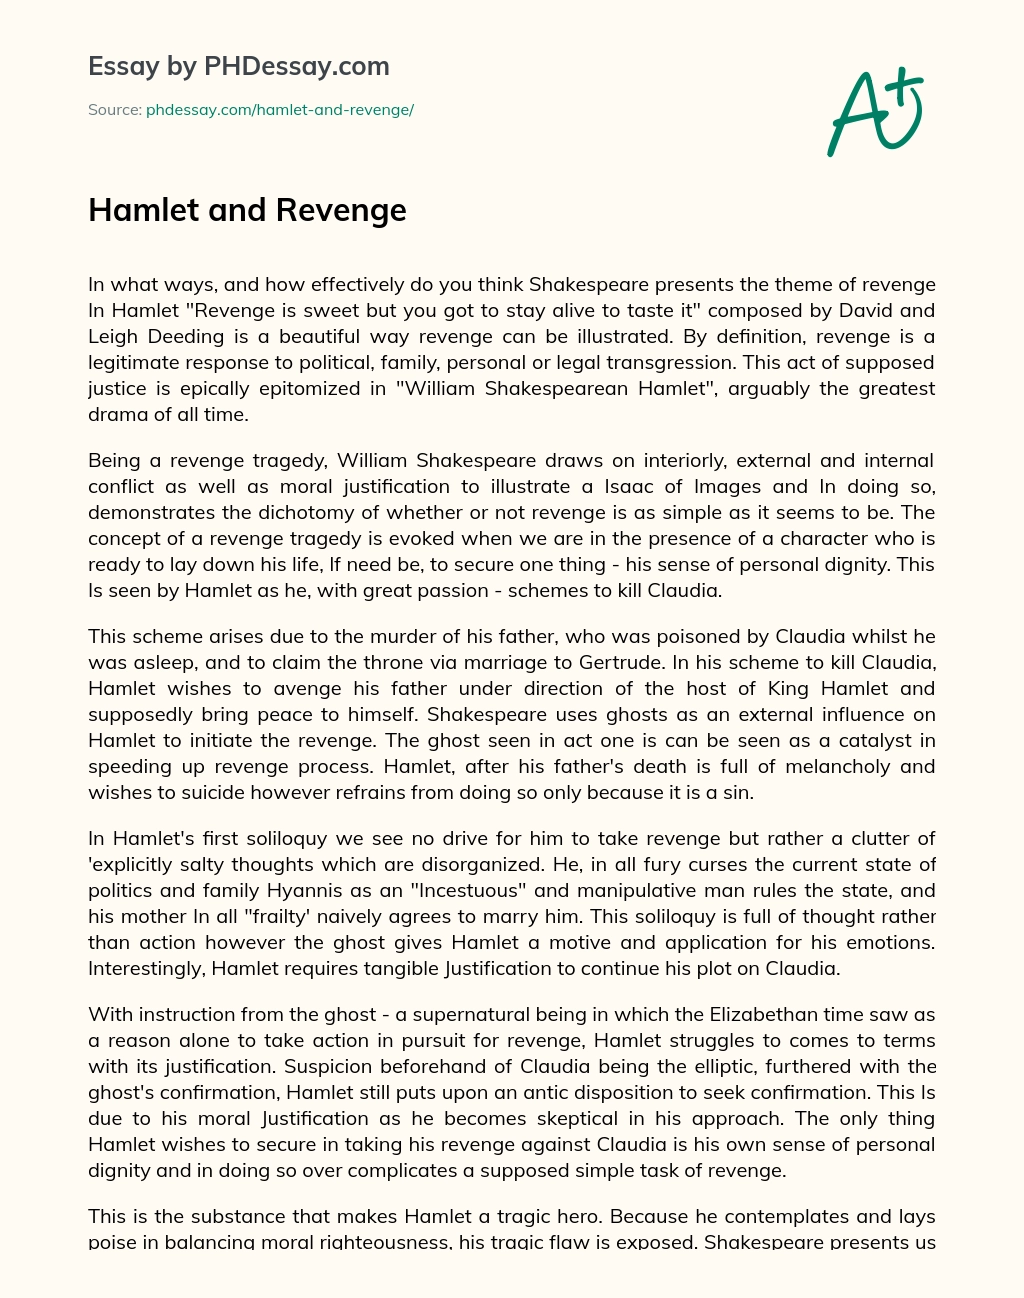 Hamlet and Revenge essay